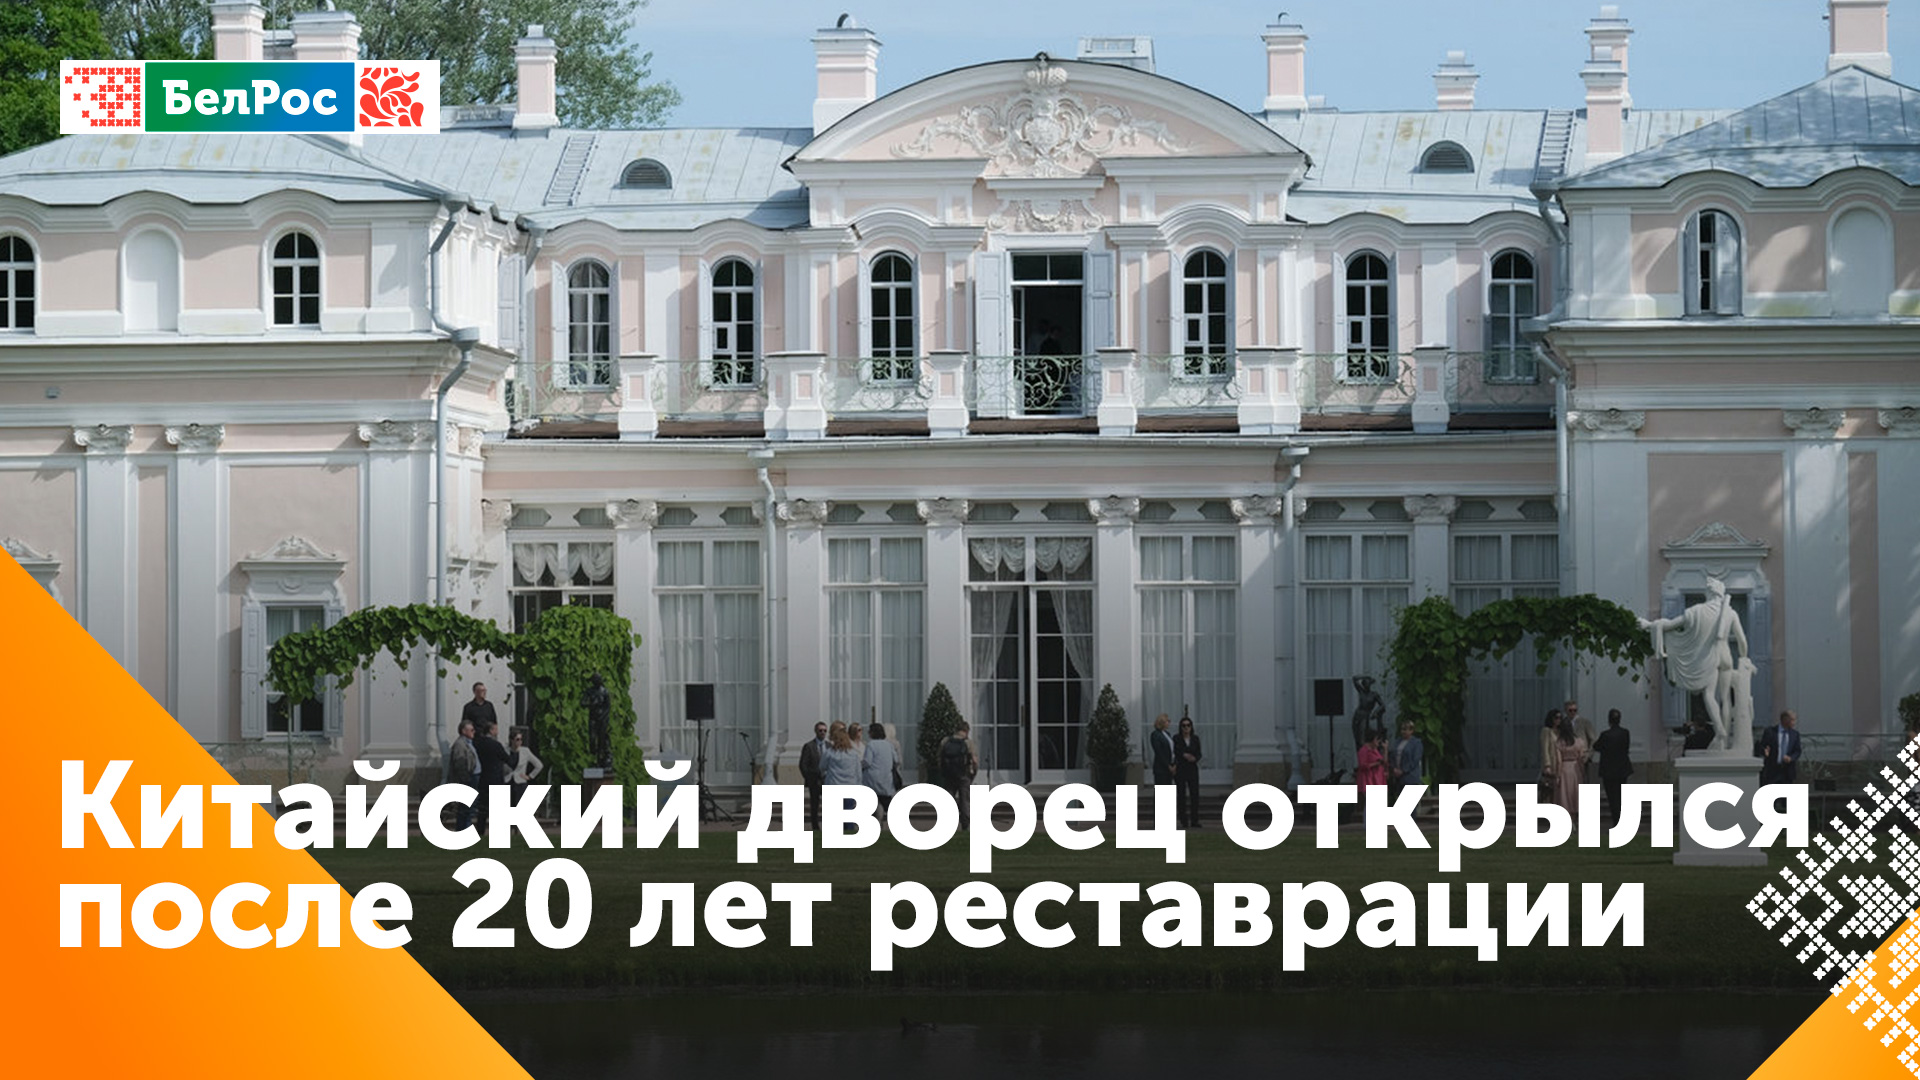 В Санкт-Петербурге открыли все залы Китайского дворца спустя 20 лет реставрации